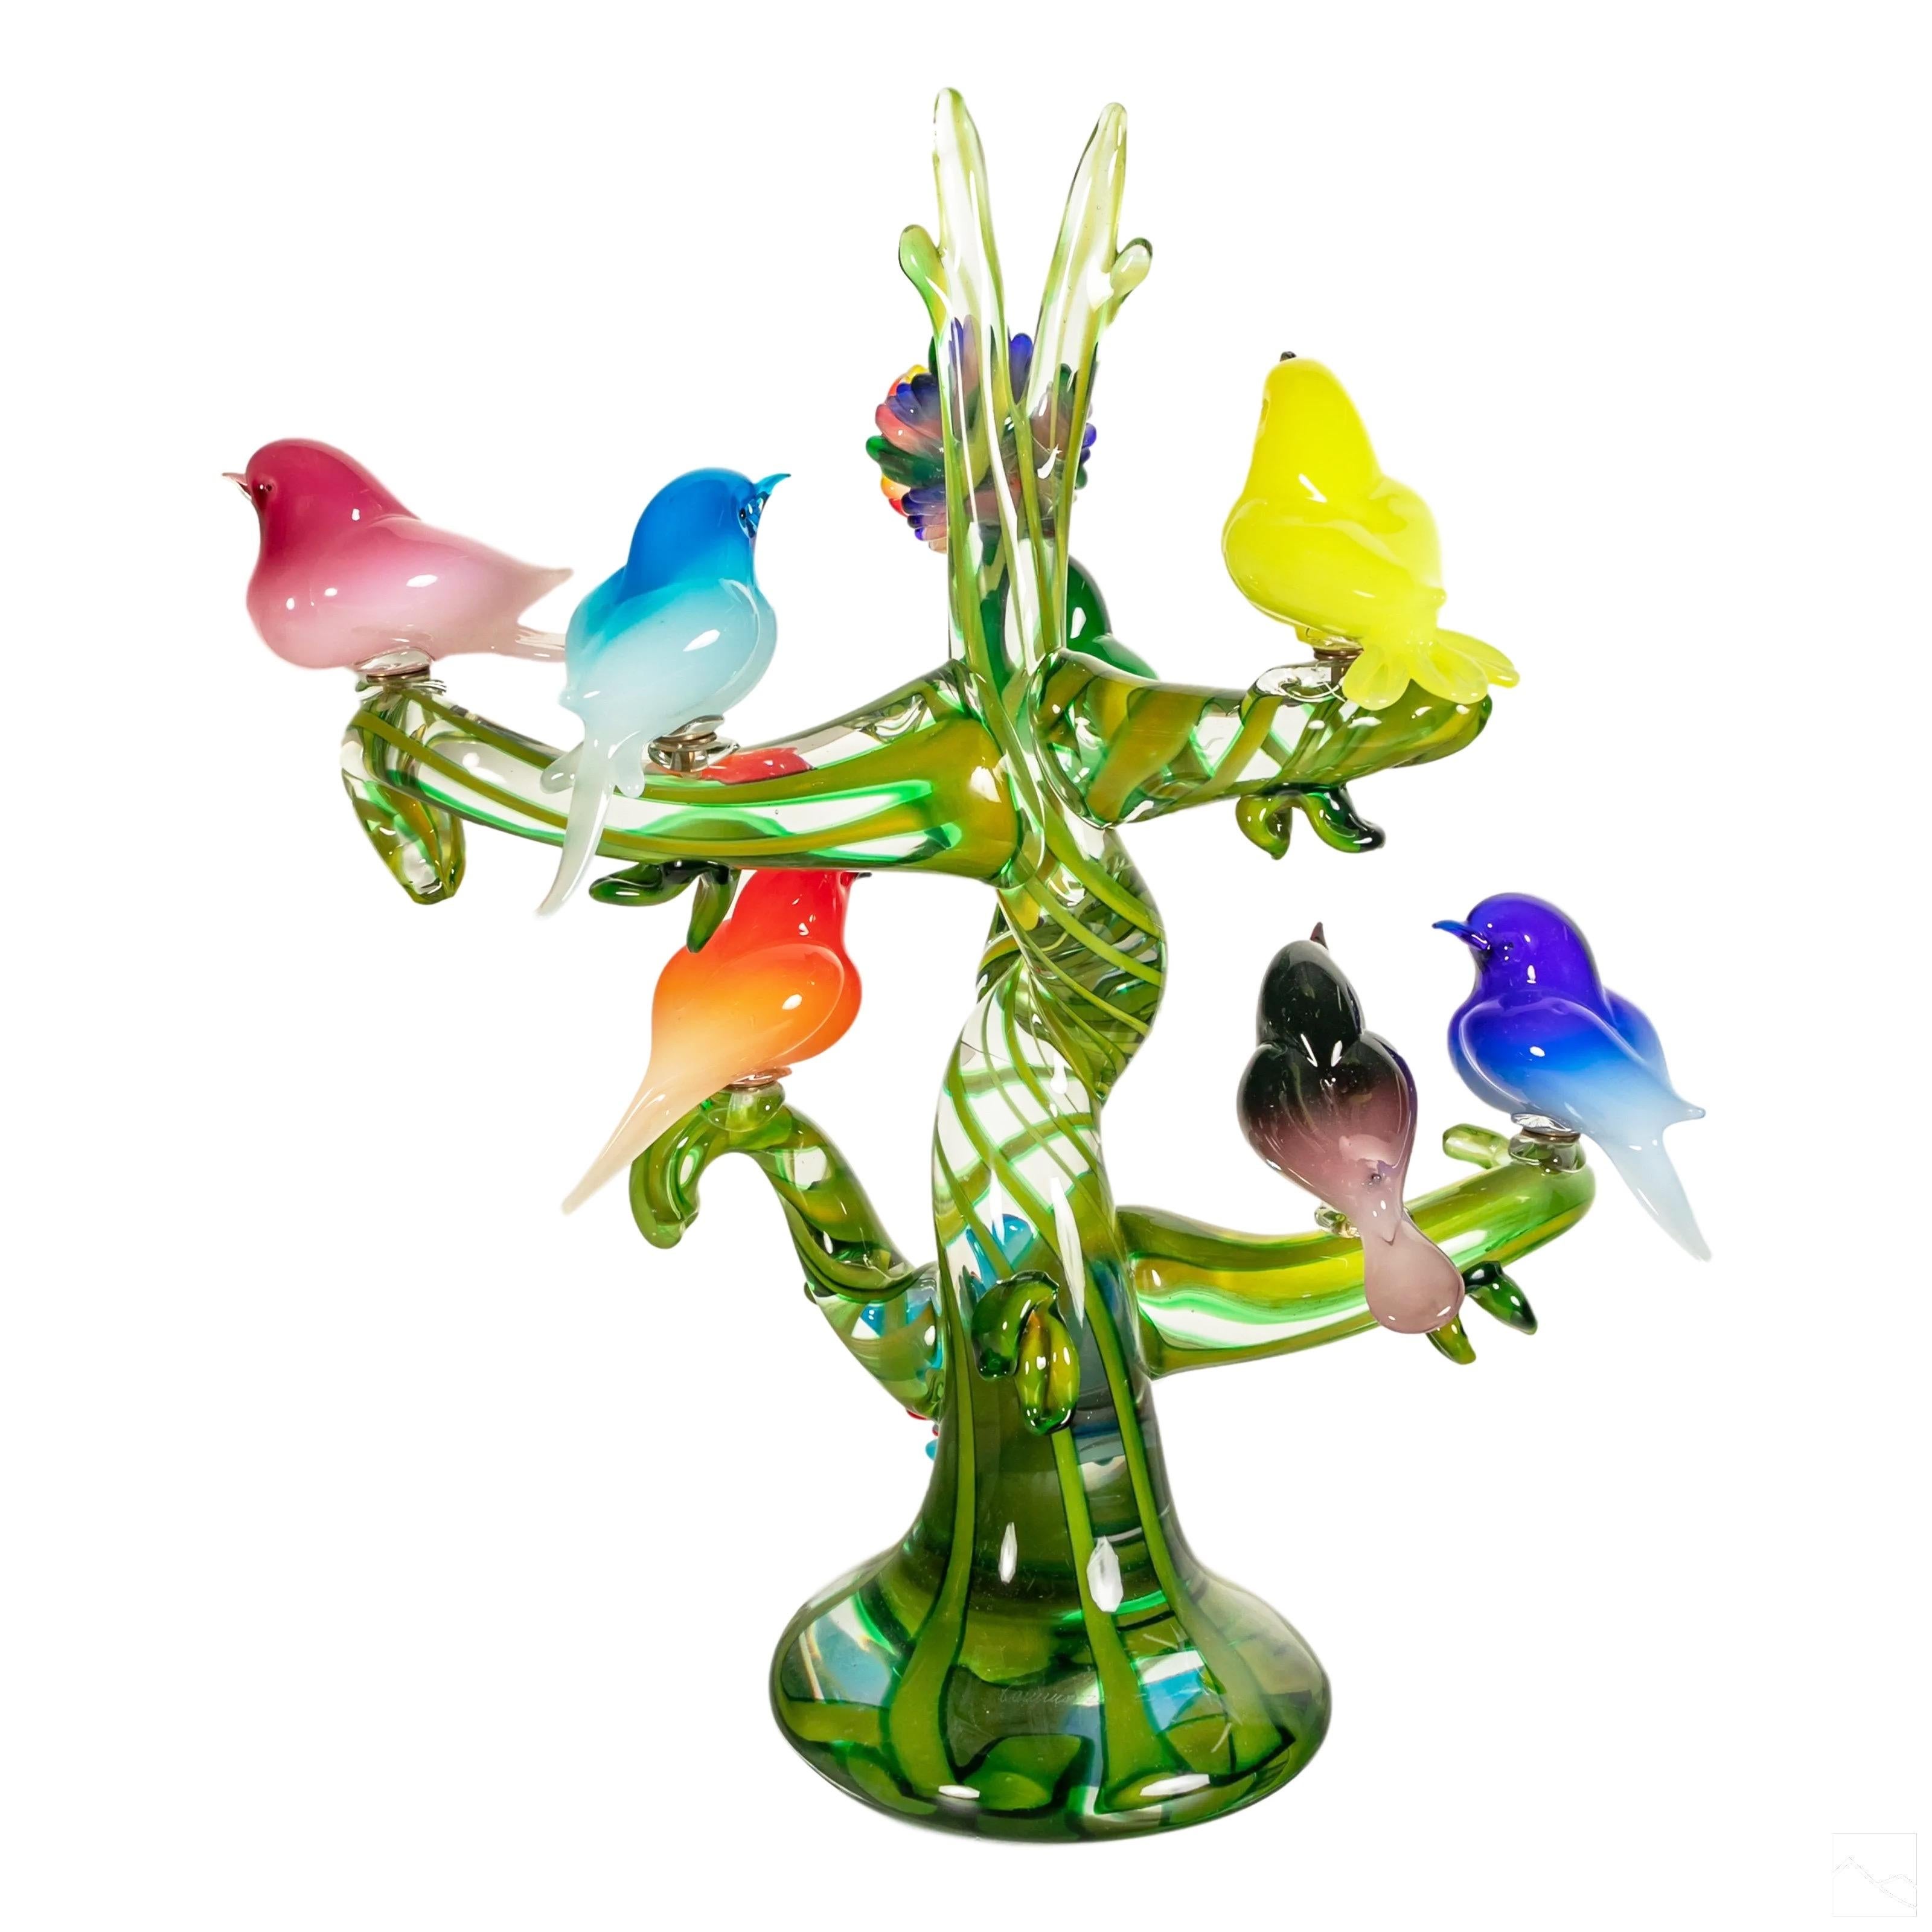 Italian Colorful Murano Glass Birds in a Tree Sculpture, Enrico Cammozzo, Italy, 1970s